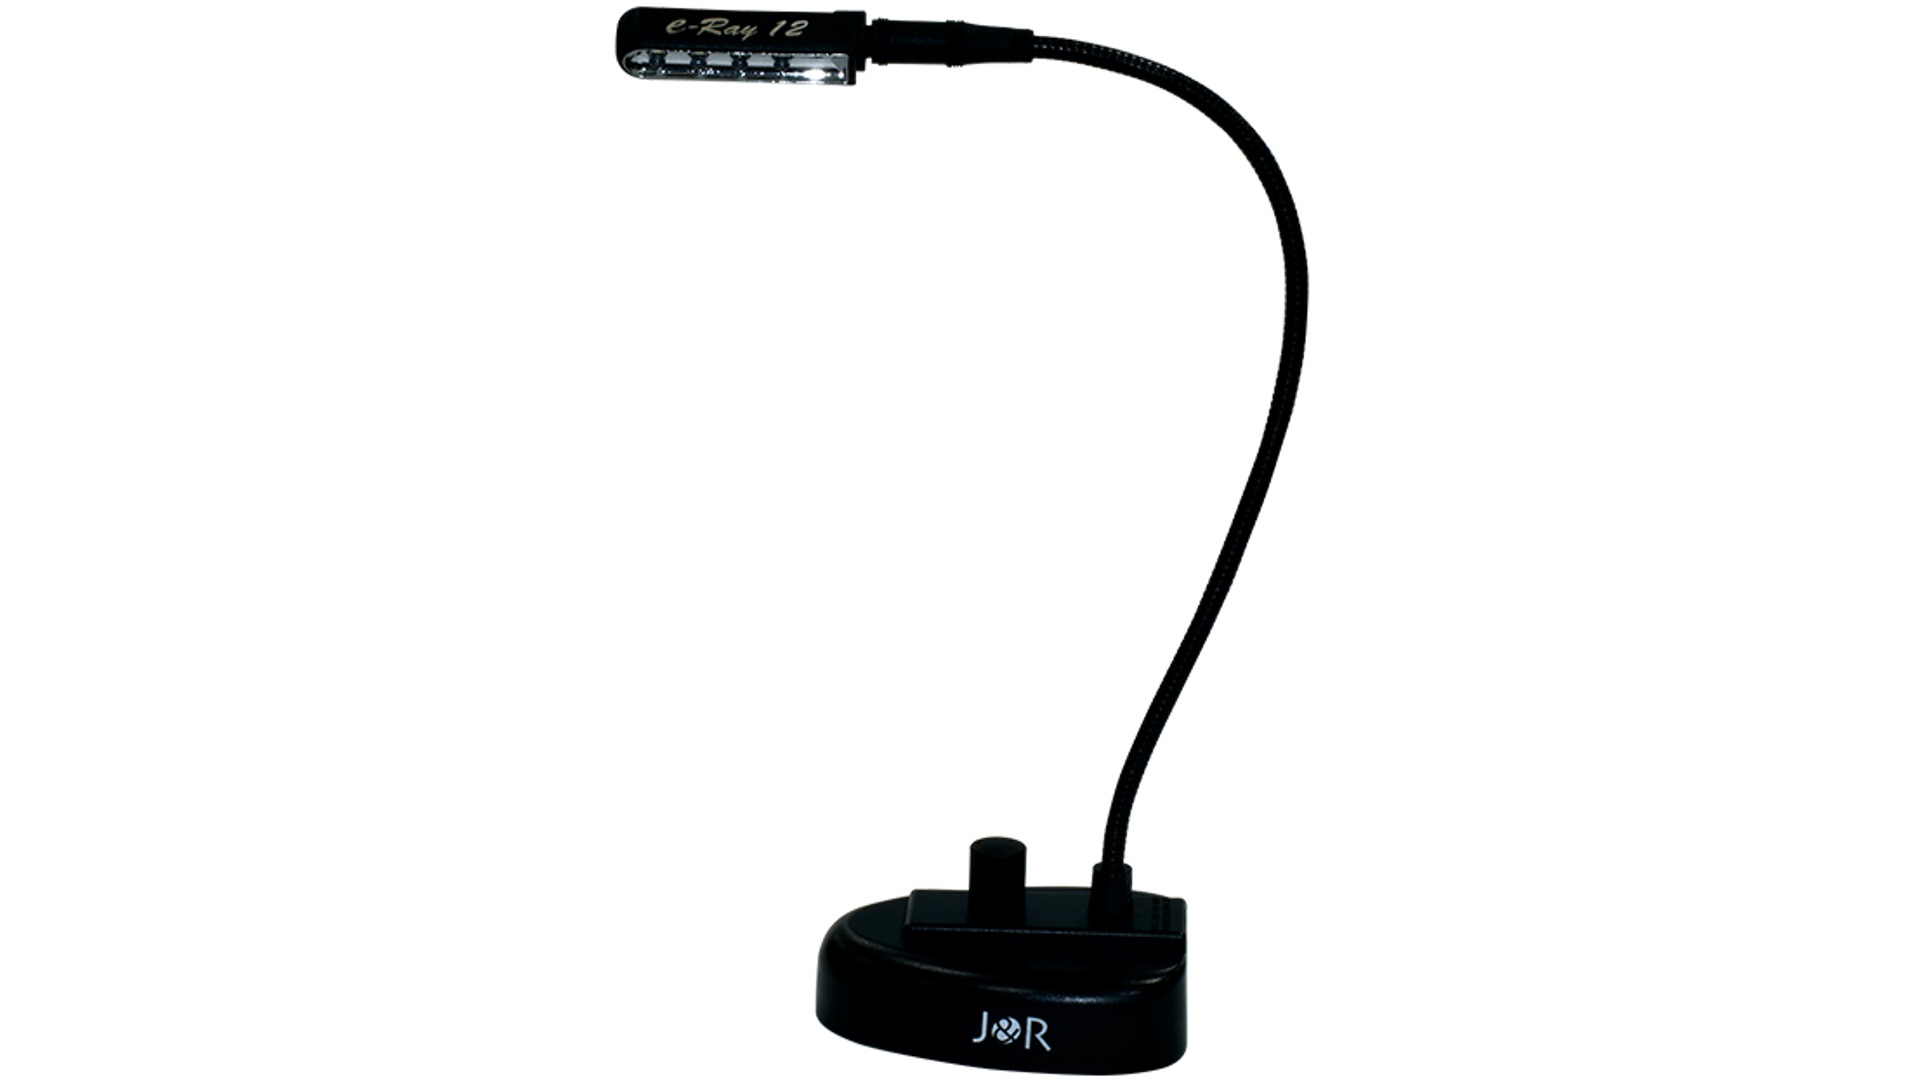 LEDグースネックライト J&R LGN-914 新規レンタル開始しました！